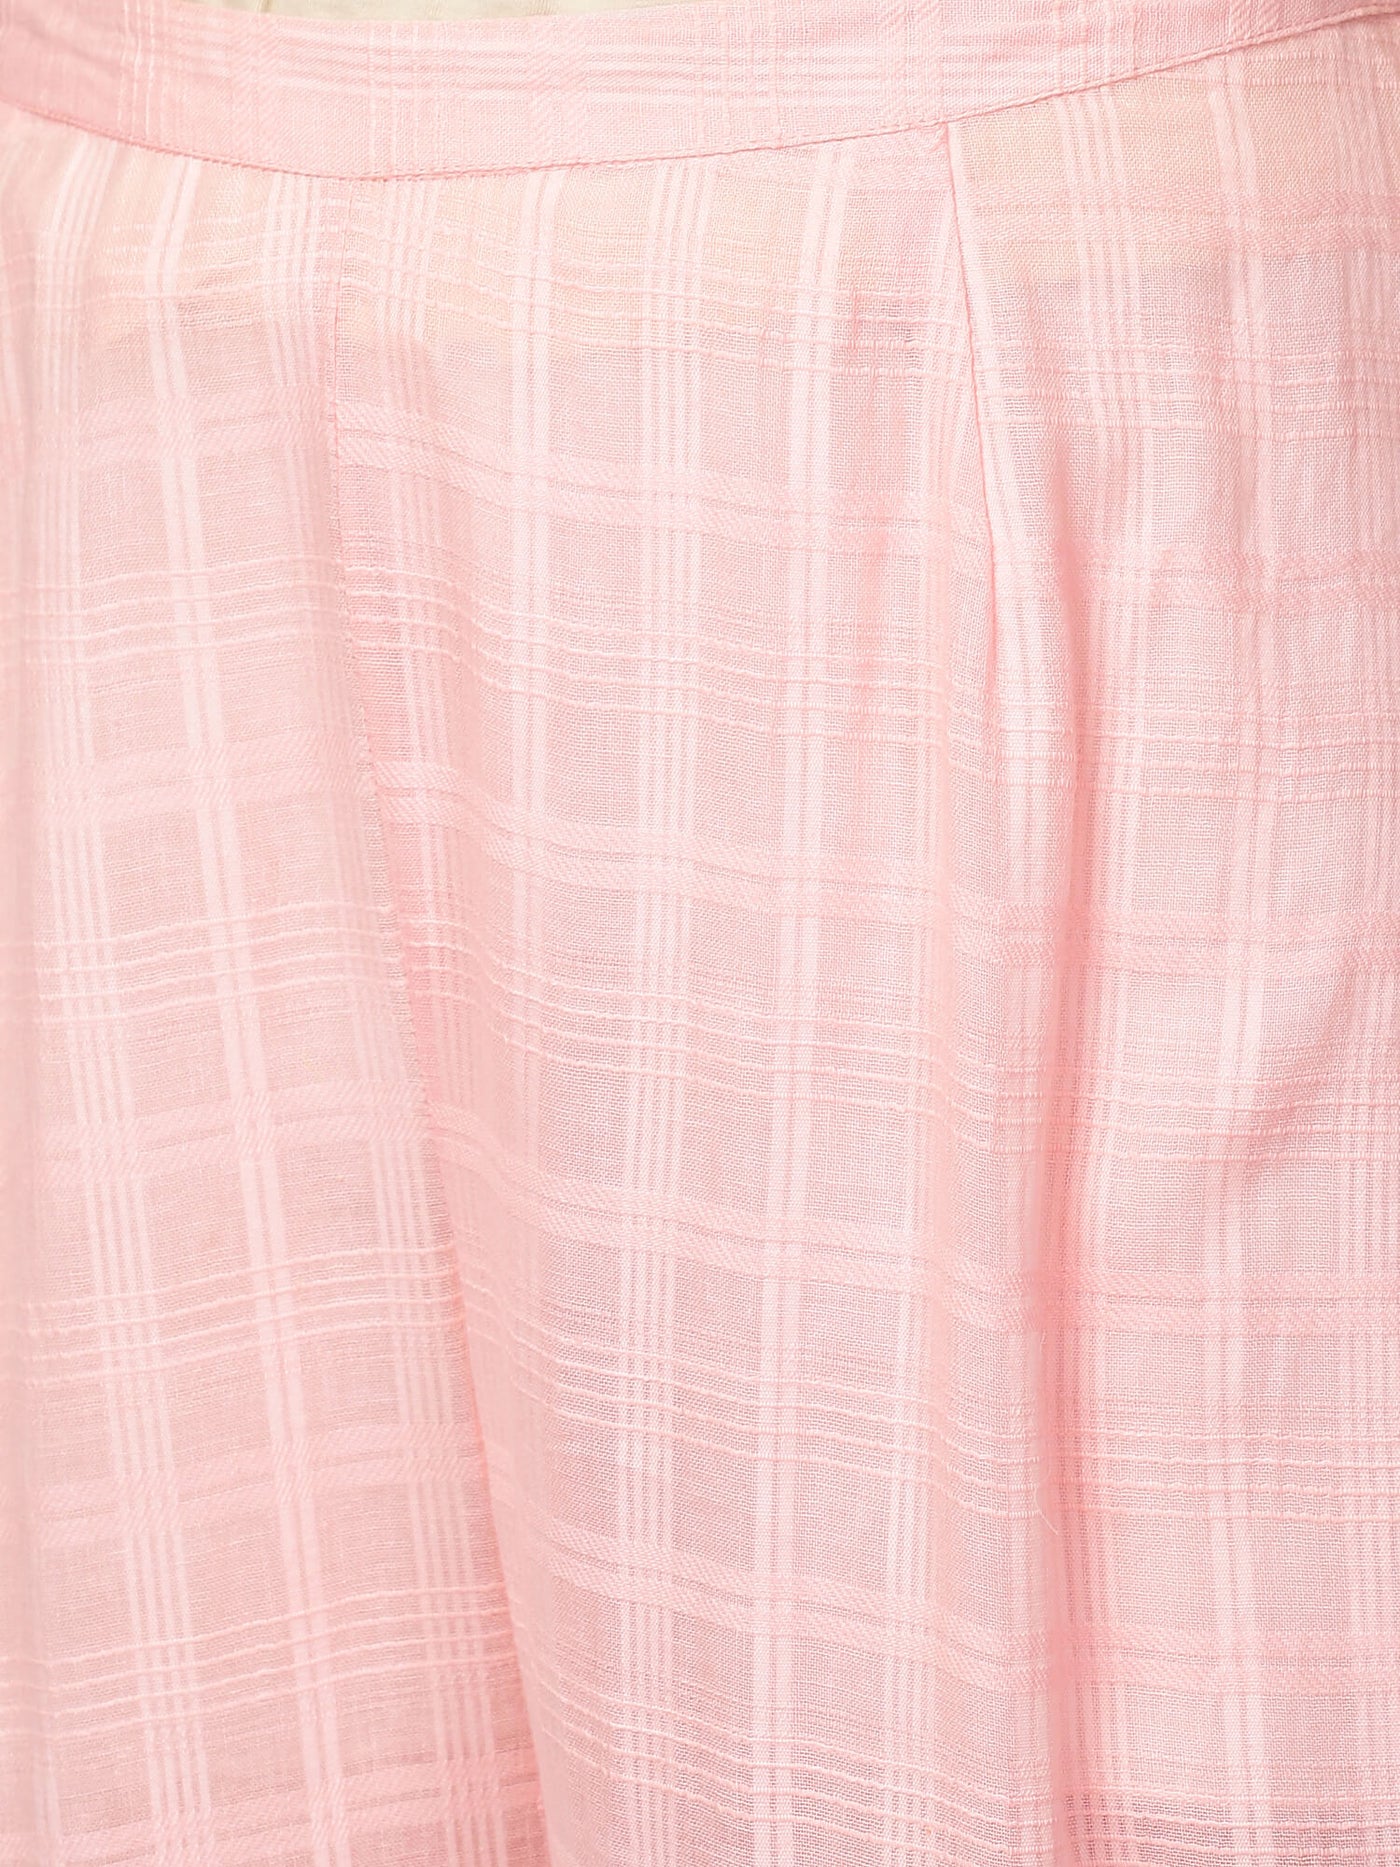 Pink Cotton Kurta & Pants Set